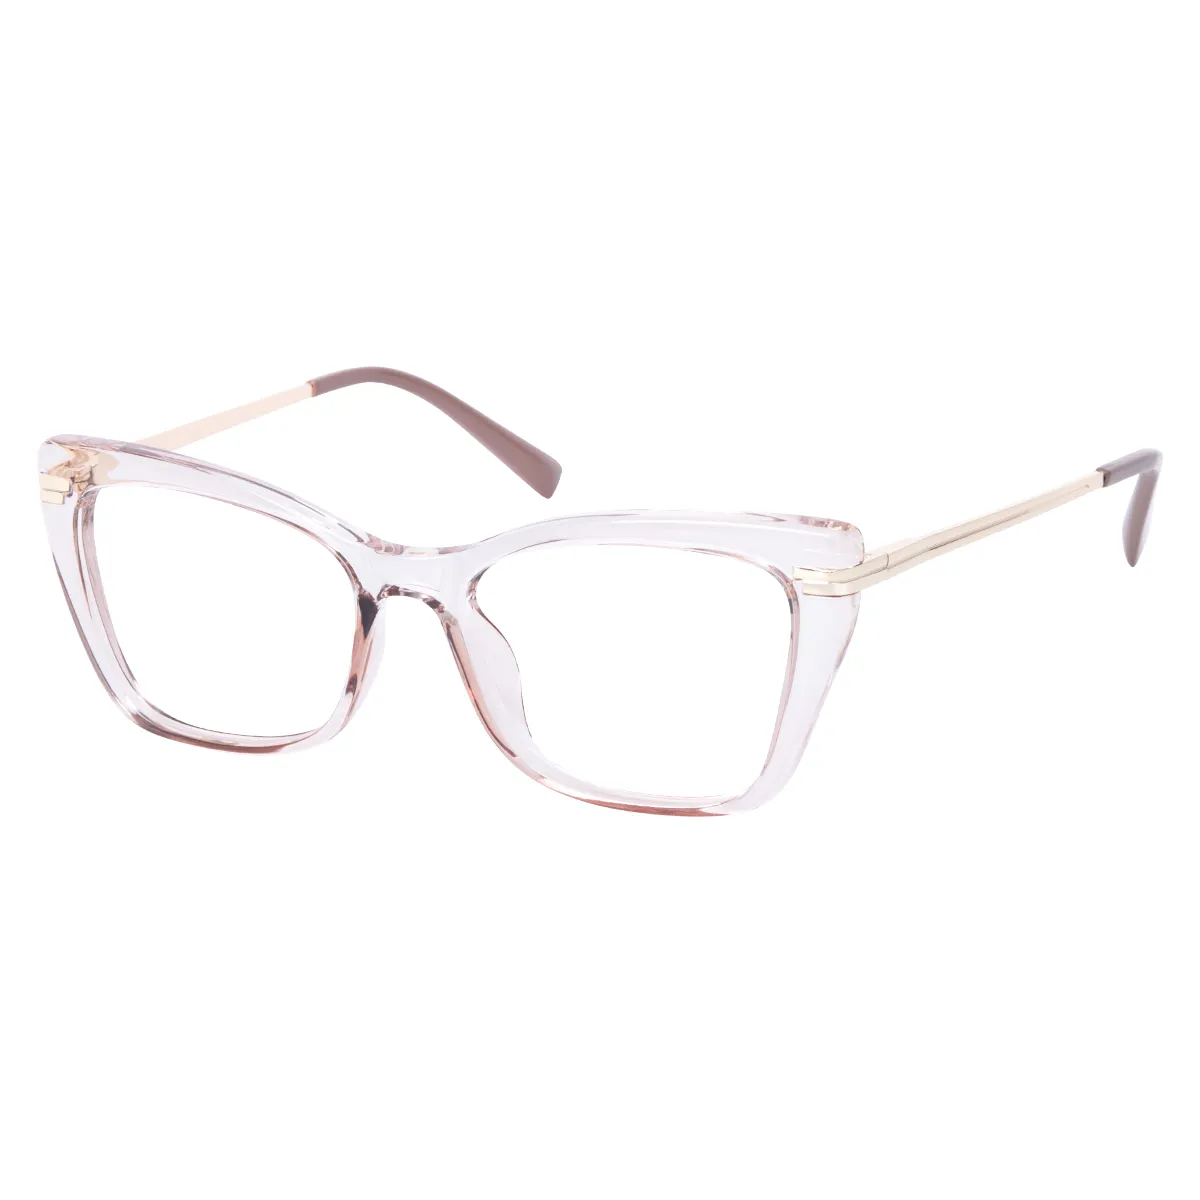 Azura - Cat-eye Translucent Glasses for Women